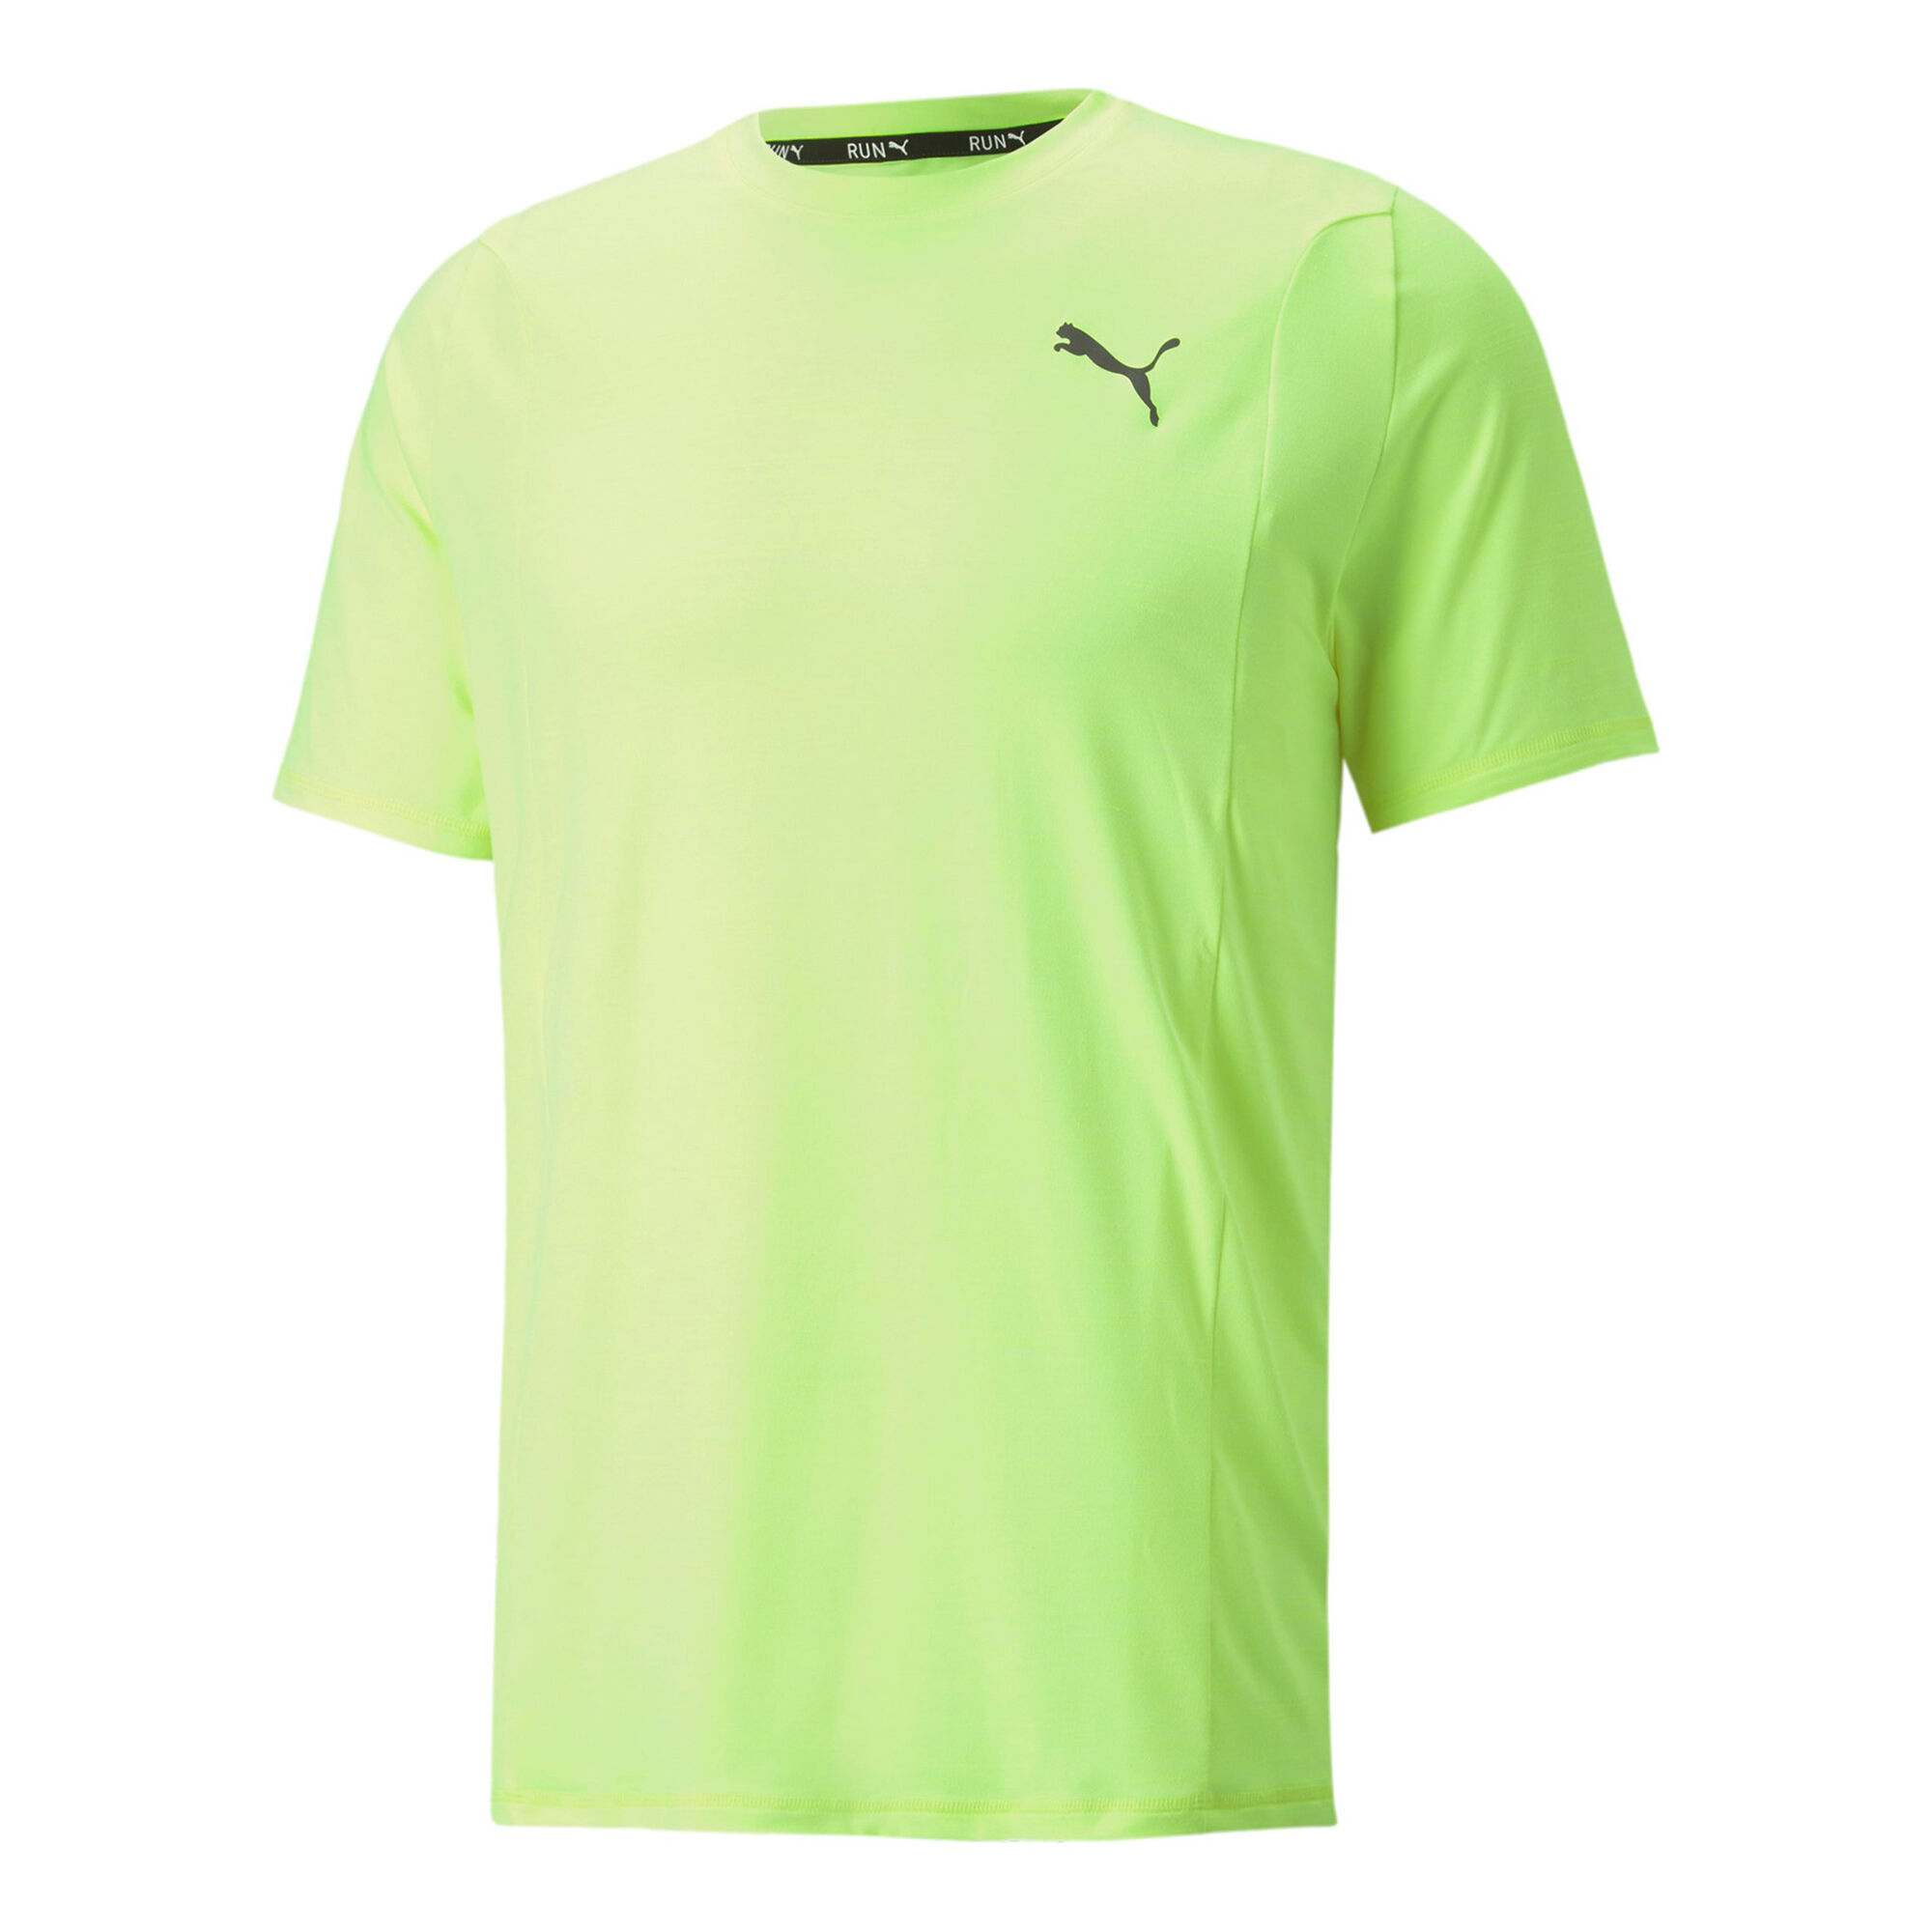 Neon Men Running Puma Shirts | Green T-Shirt Buy Cloudspun COM Running Point online